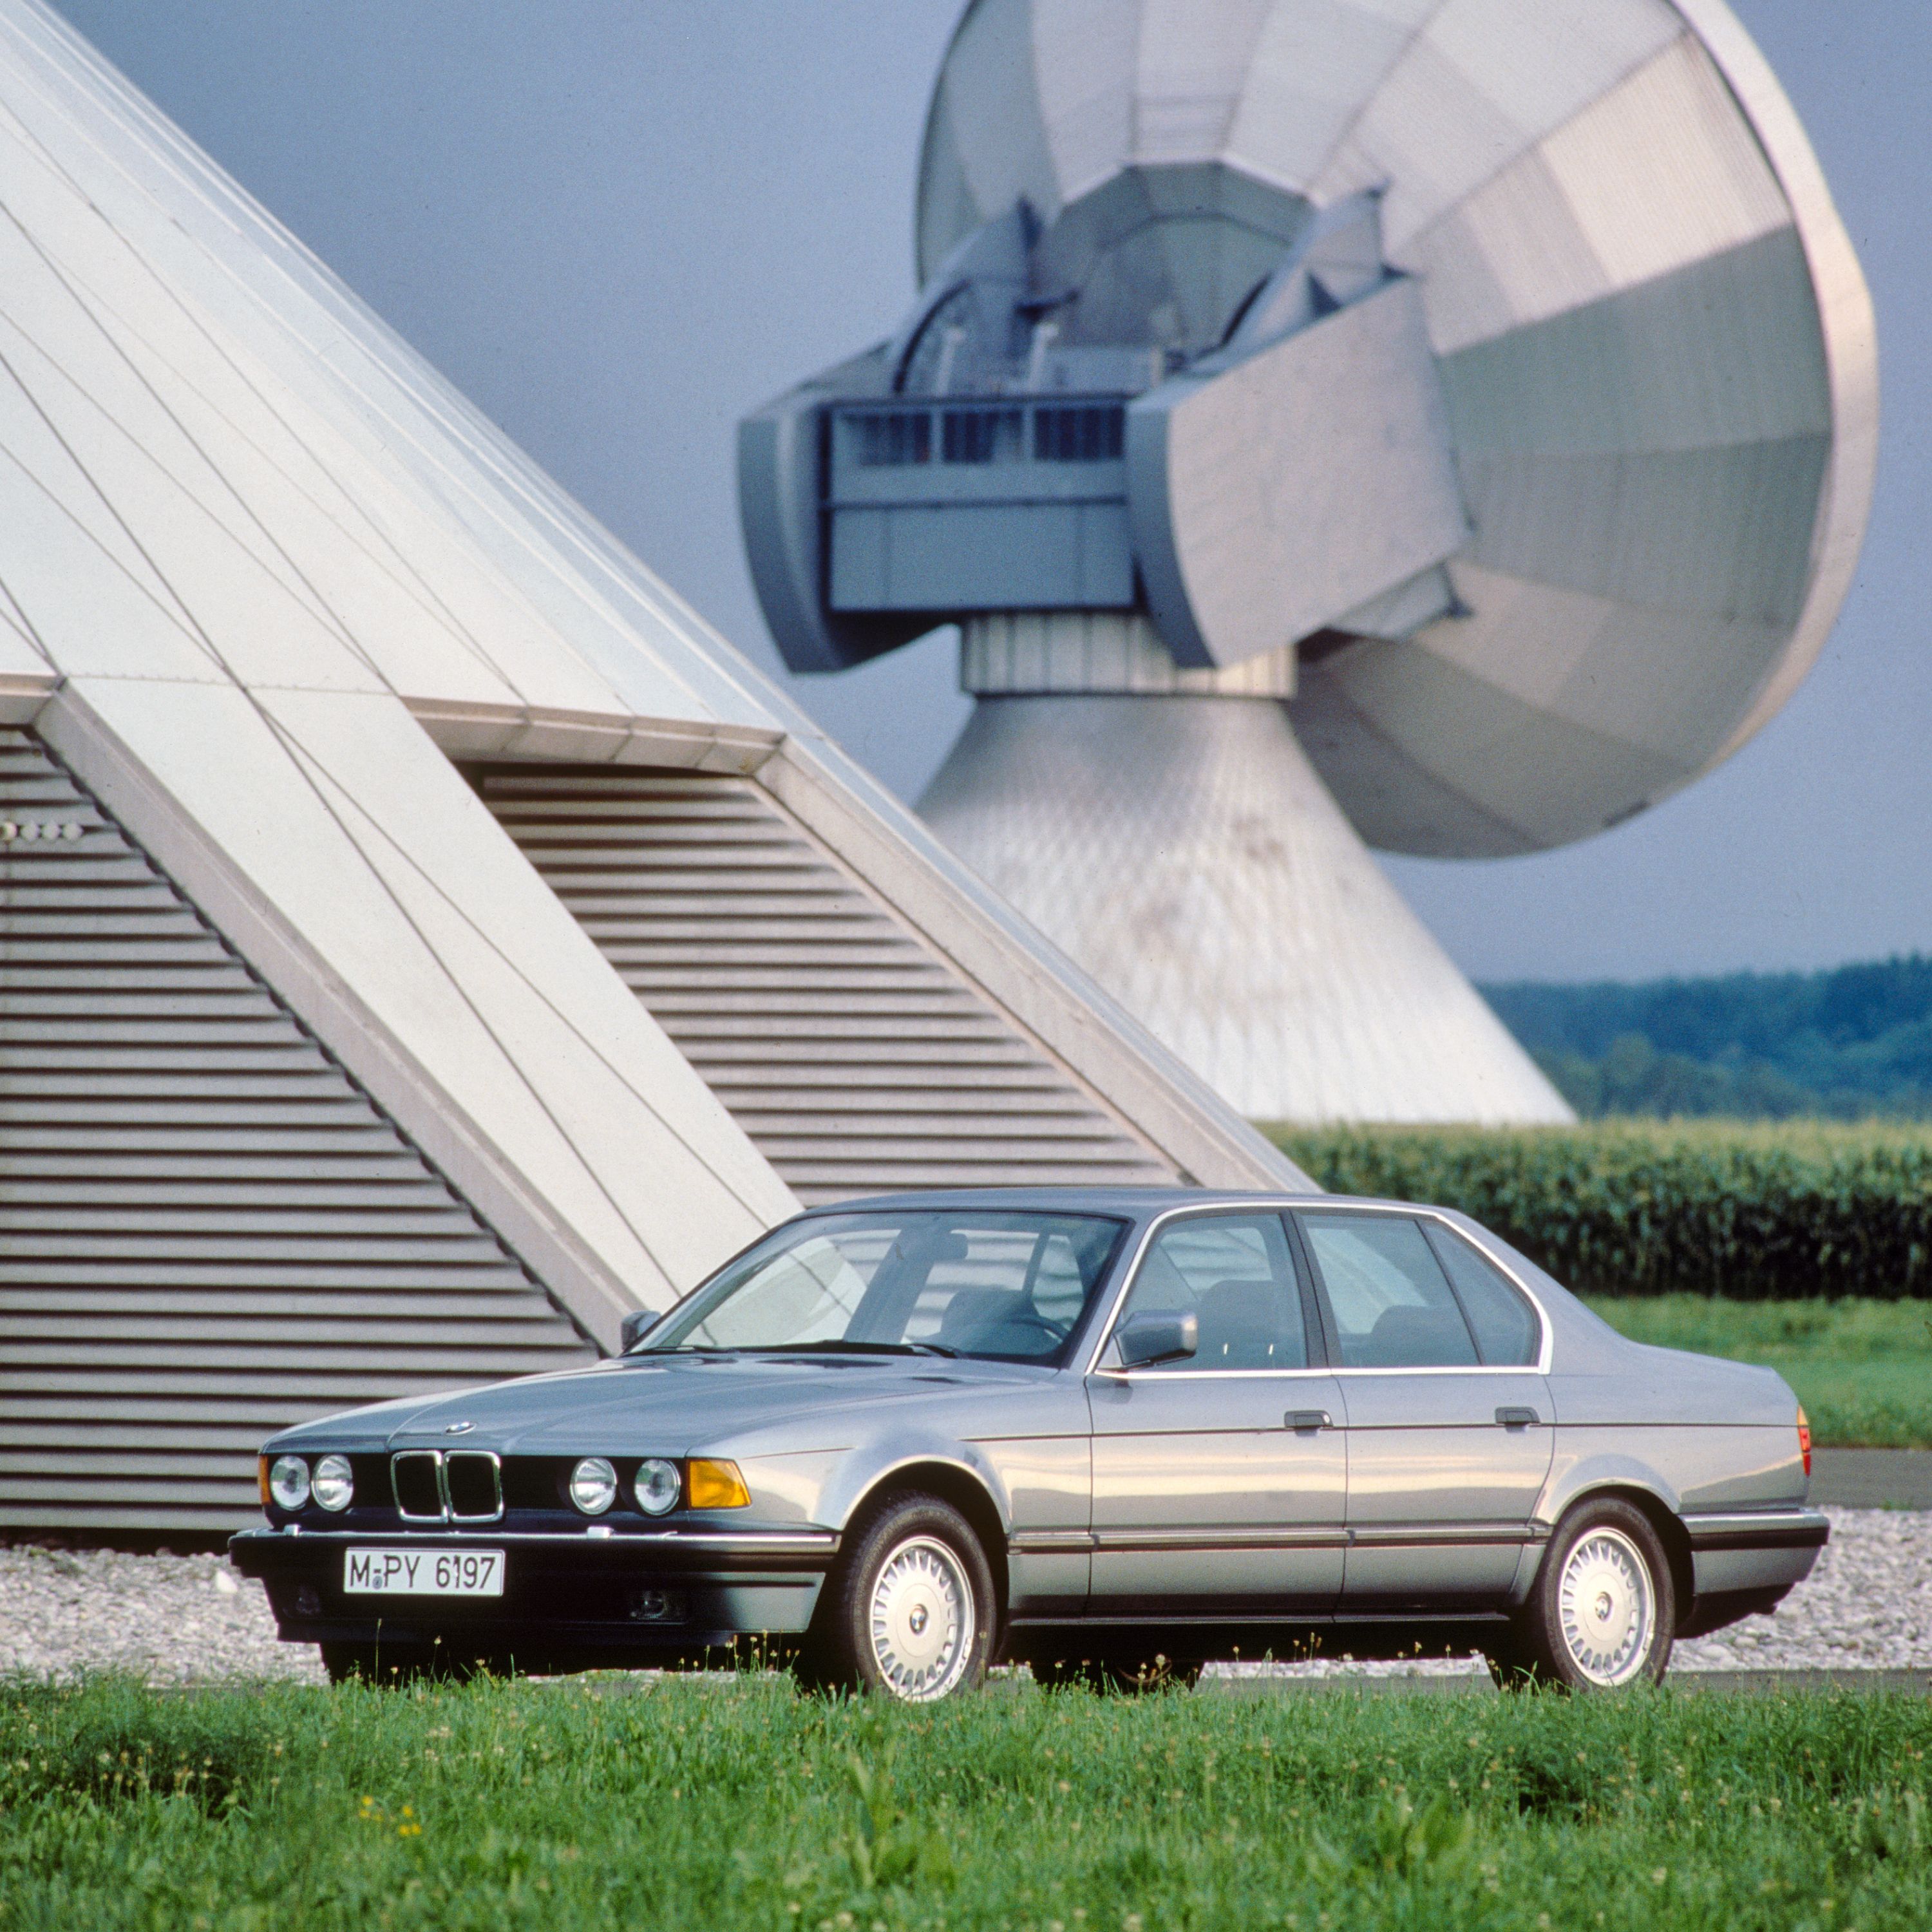 BMW Série 7 Berline E32 dans un environnement agricole entouré de champs et d'installations agricoles